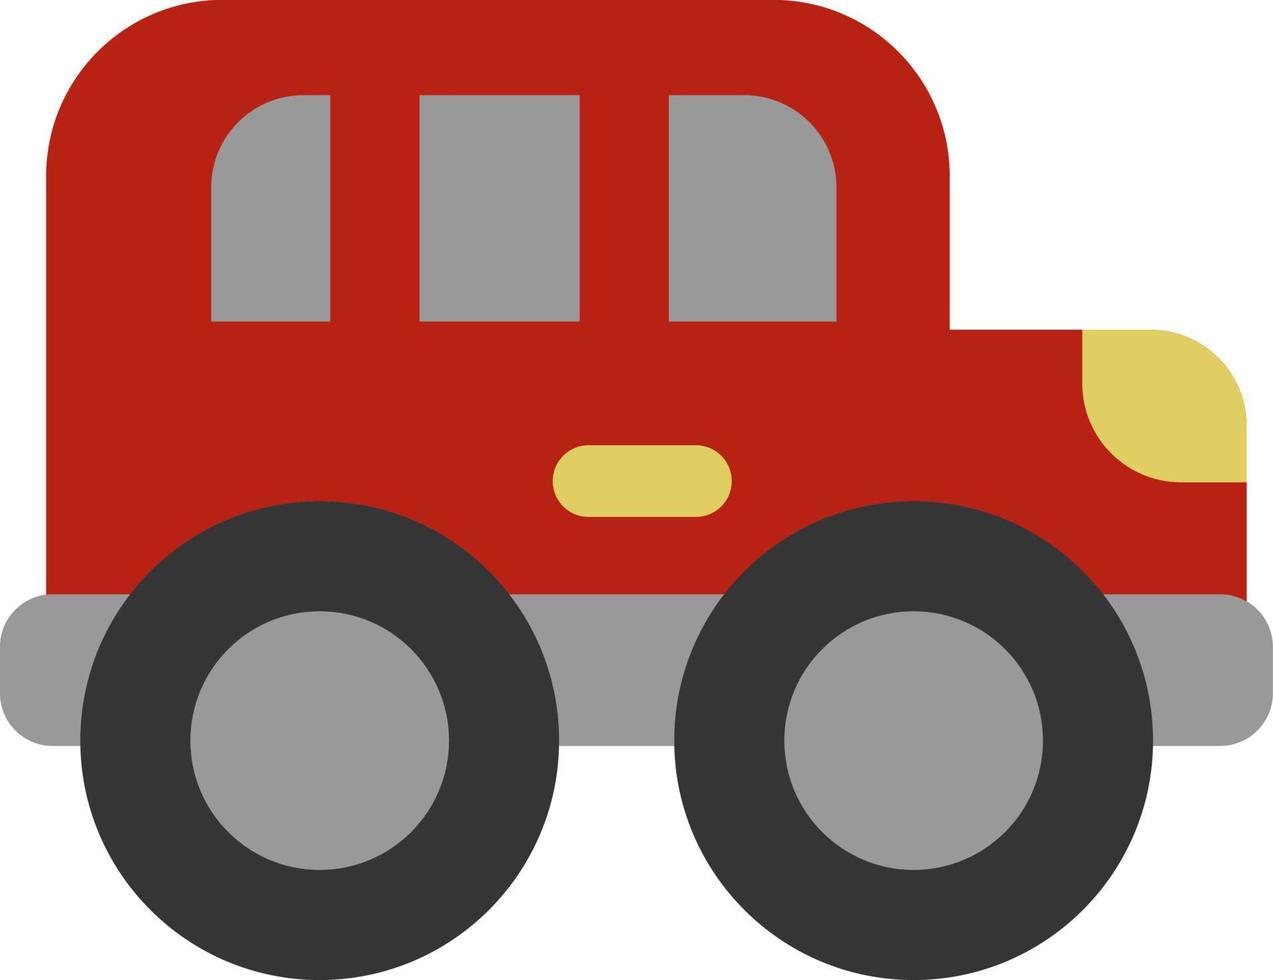 off road carro de transporte vermelho, ilustração, vetor em um fundo branco.